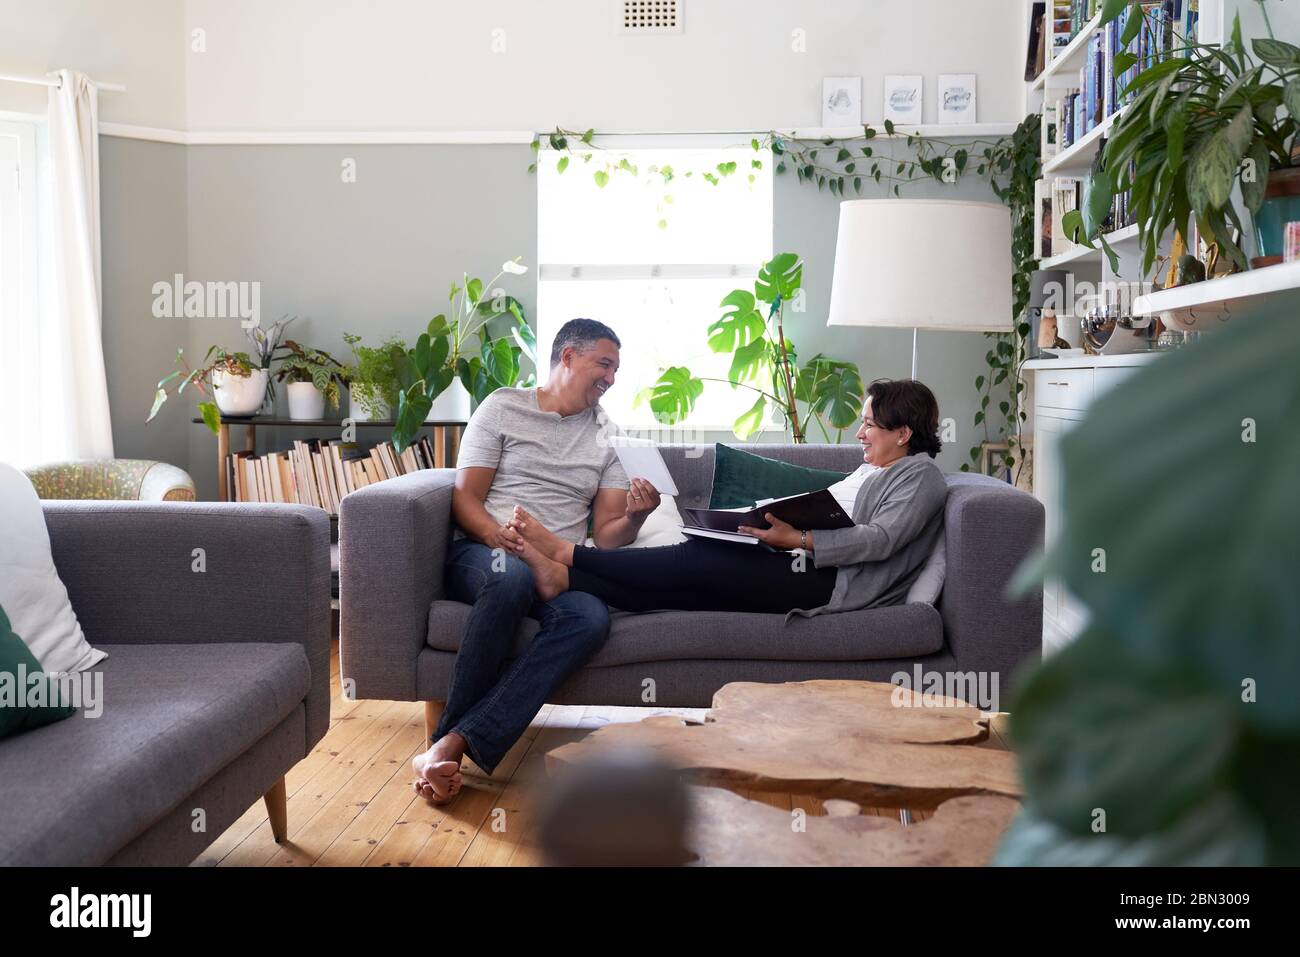 Felice coppia matura che usa un tablet digitale sul divano del soggiorno Foto Stock